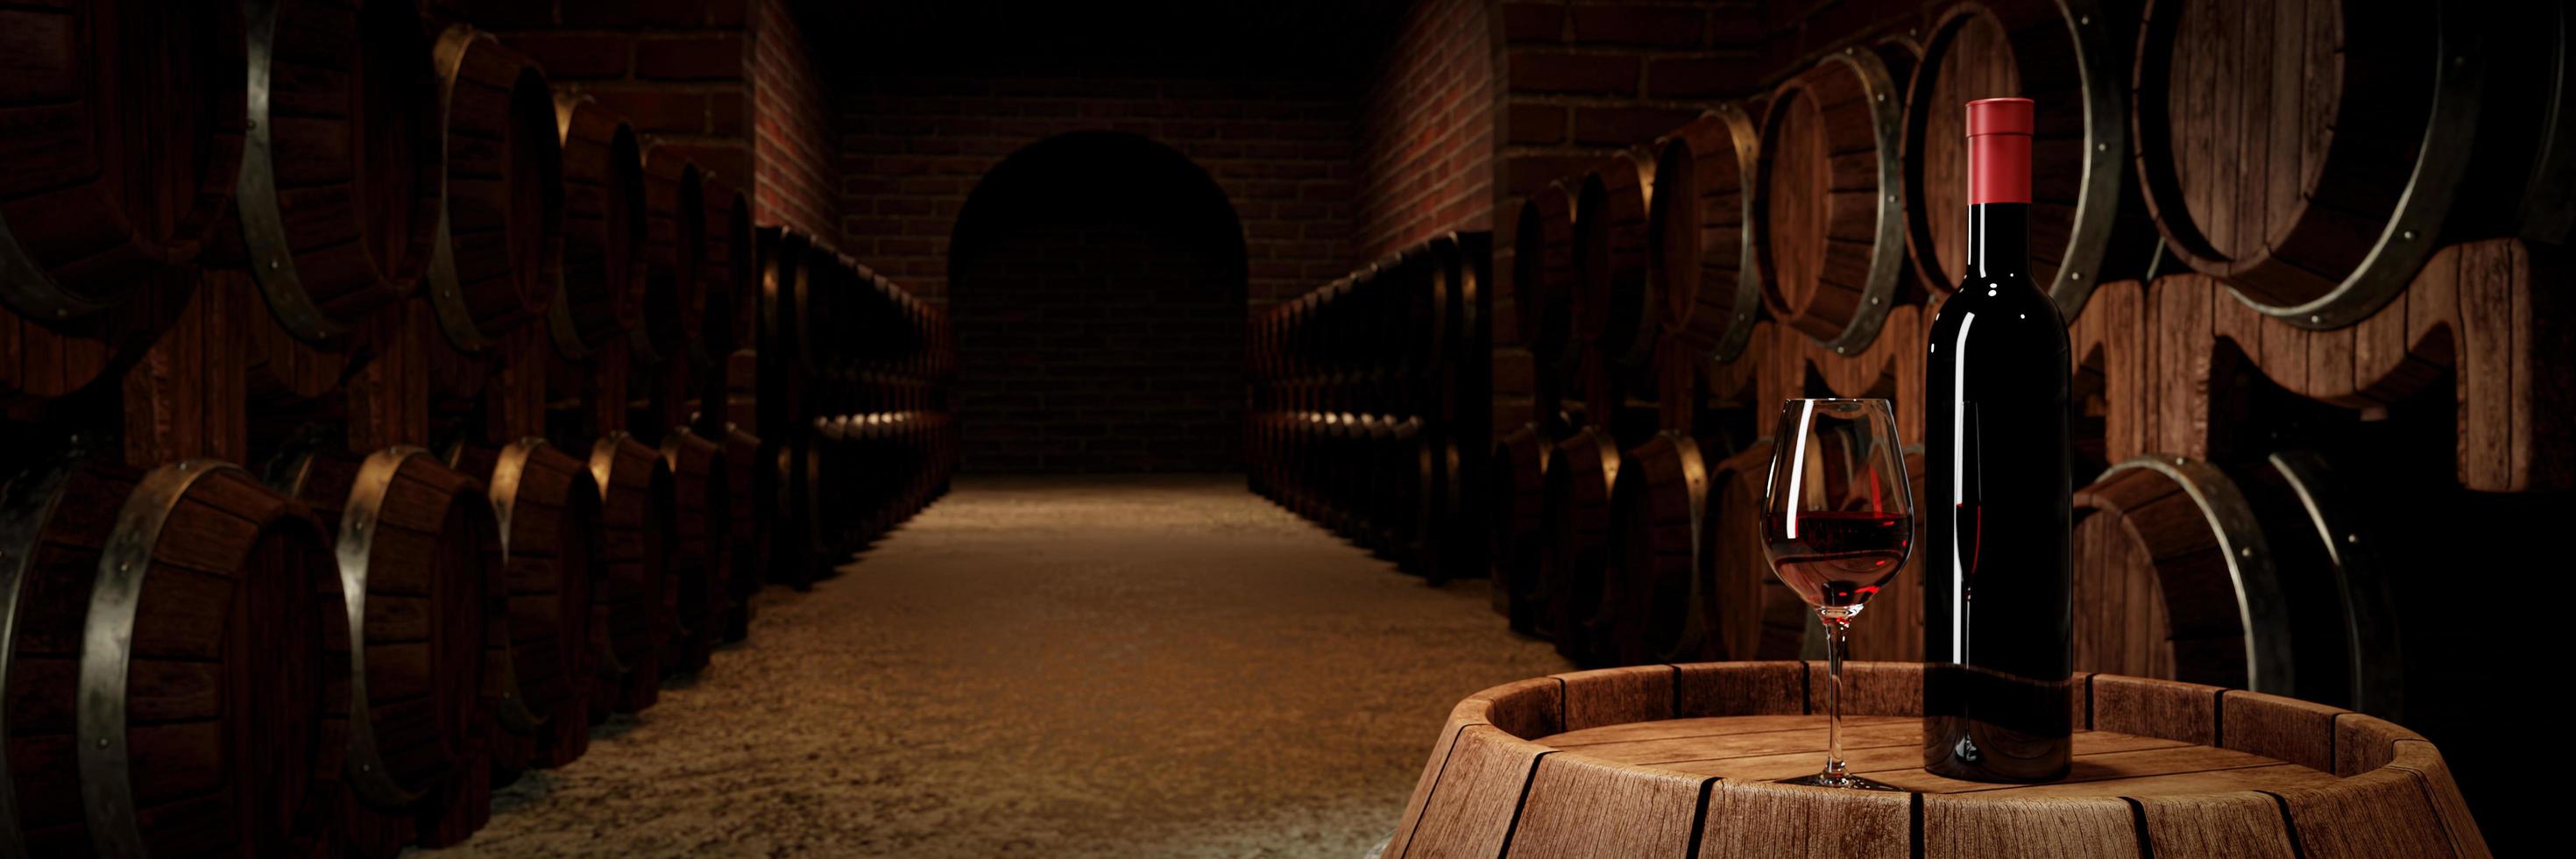 botella de vino tinto y vidrio transparente con vino tinto colocado en un tanque de fermentación de vino con muchos tanques de fermentación de vino colocados cerca de la pared de ladrillo rojo. representación 3d foto